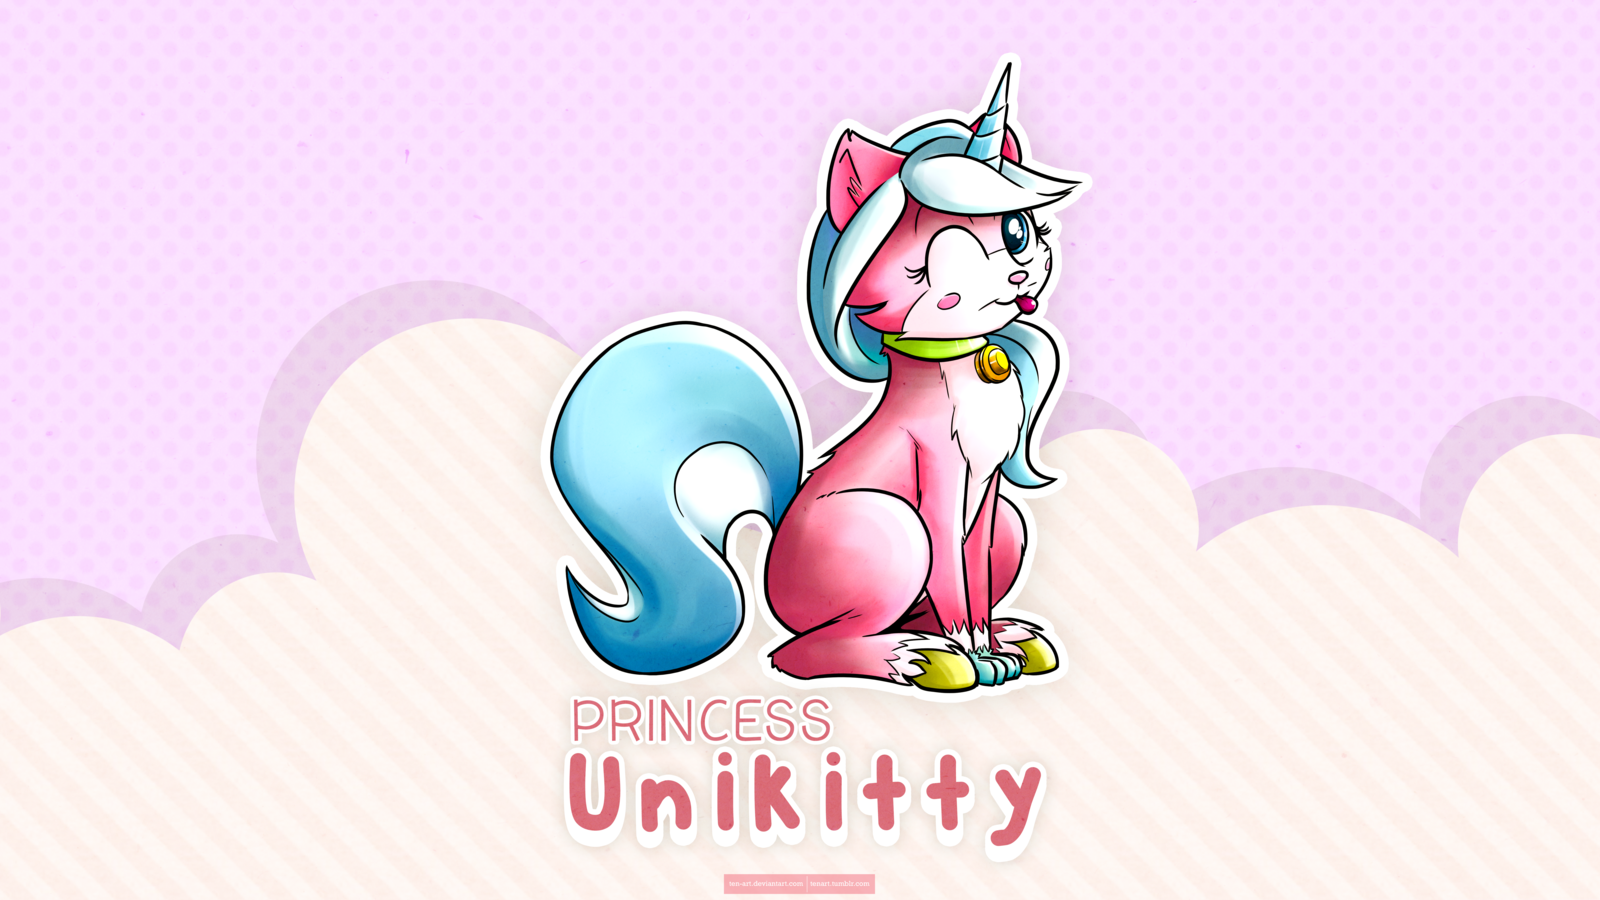 Princess Unikitty By Ten Art